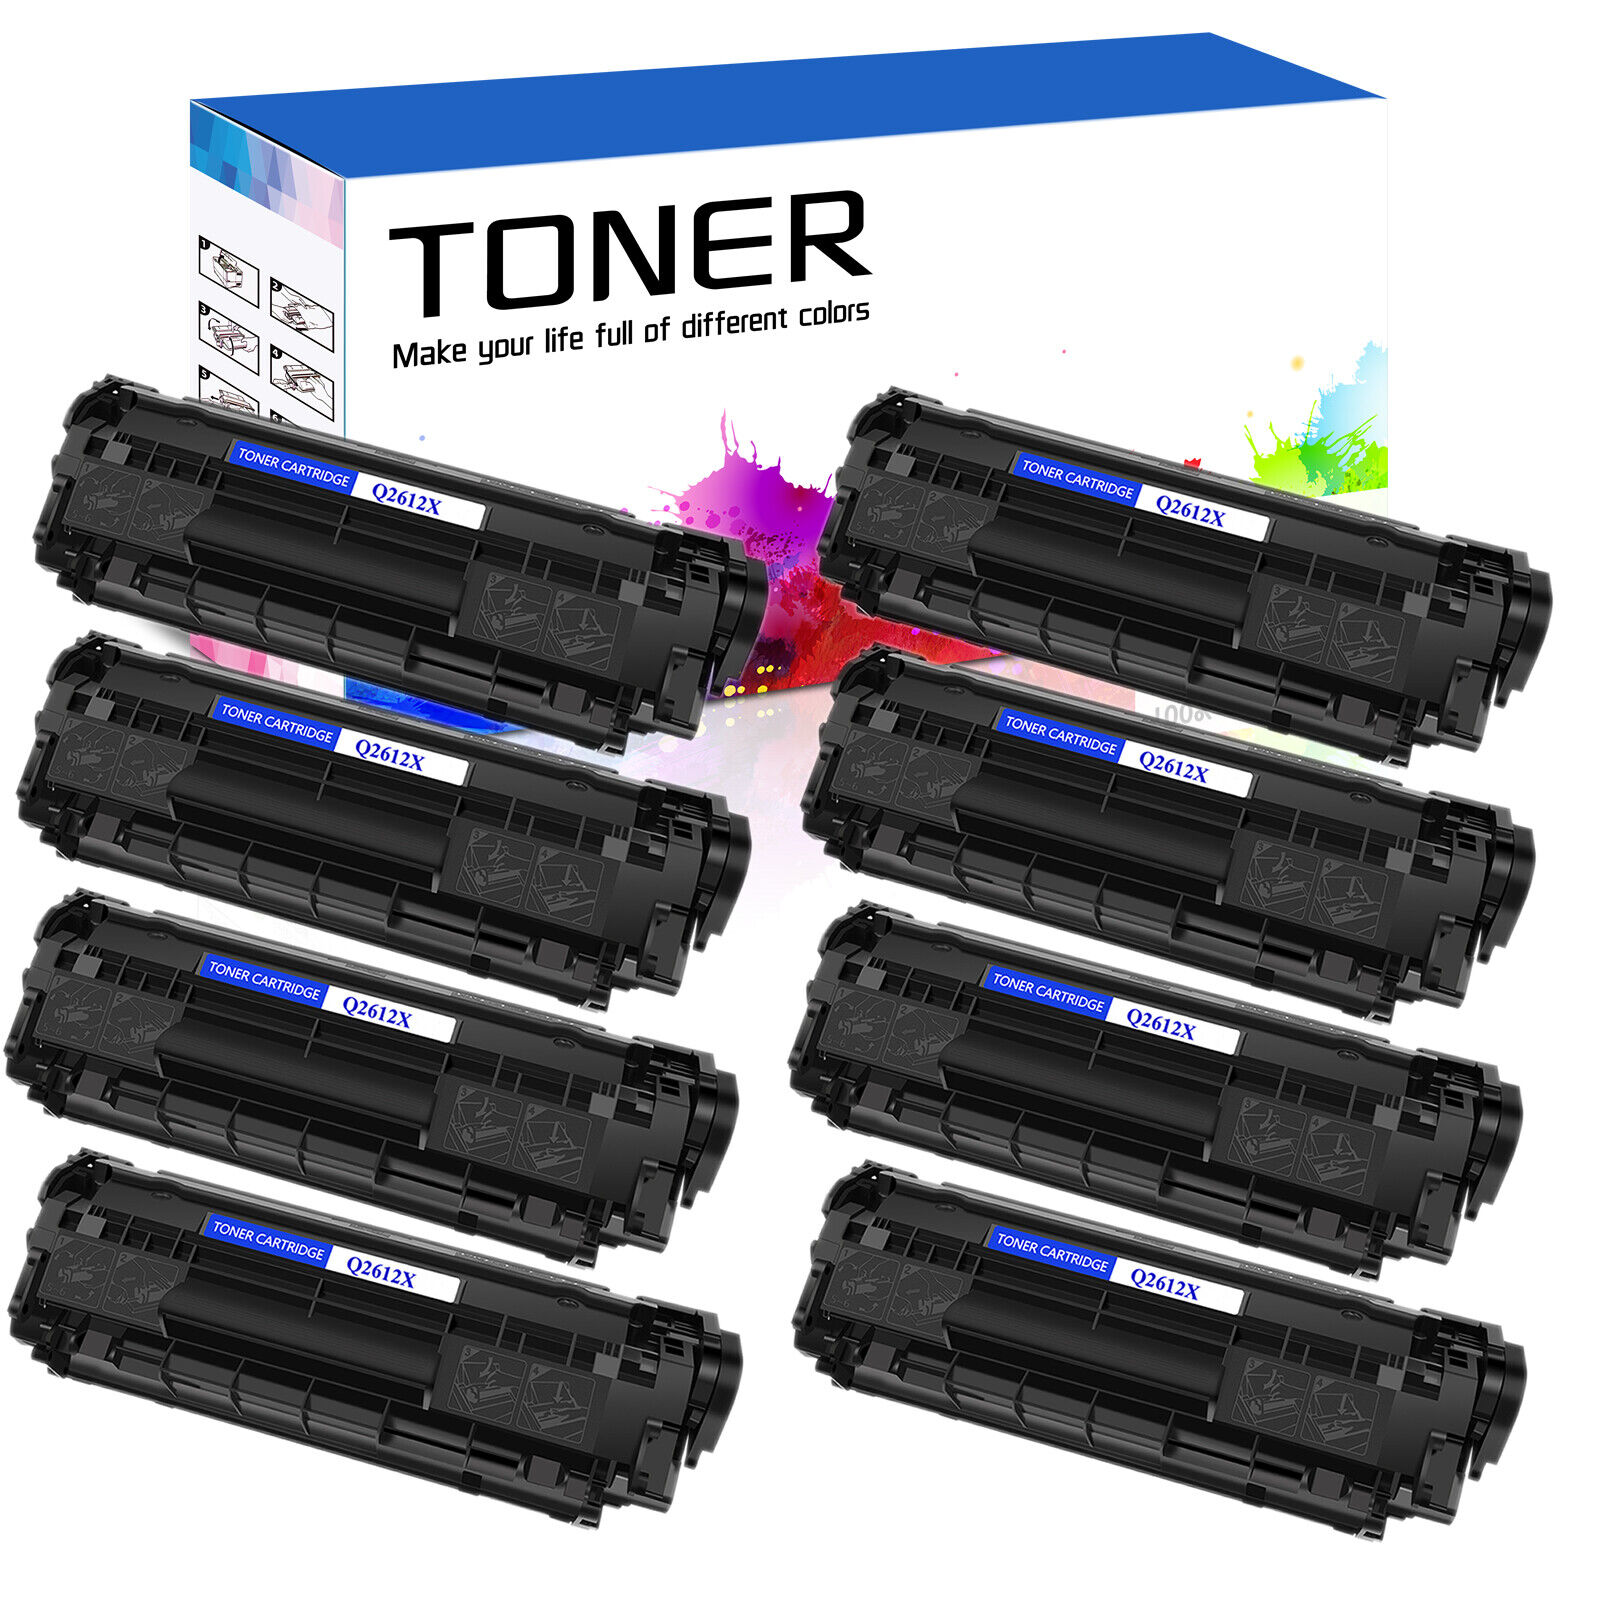 8PK Black Q2612X 12X Toner Cartridge for HP LaserJet 1018 1020 1022n 1010 1012